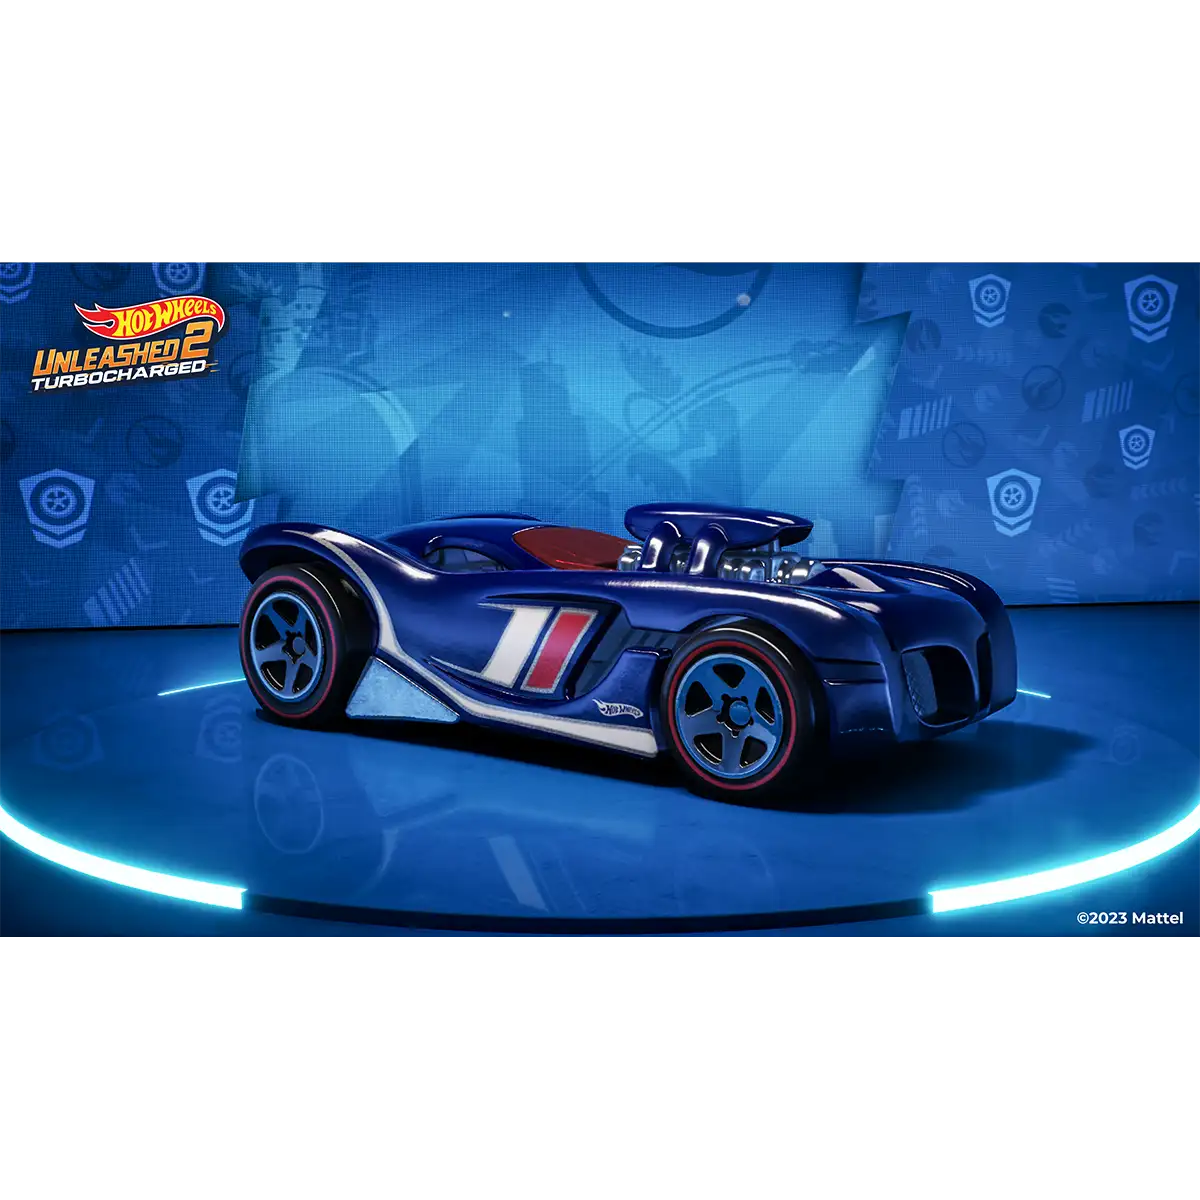 Hot Wheels Unleashed™ 2 Turbocharged (PS5) Image 7